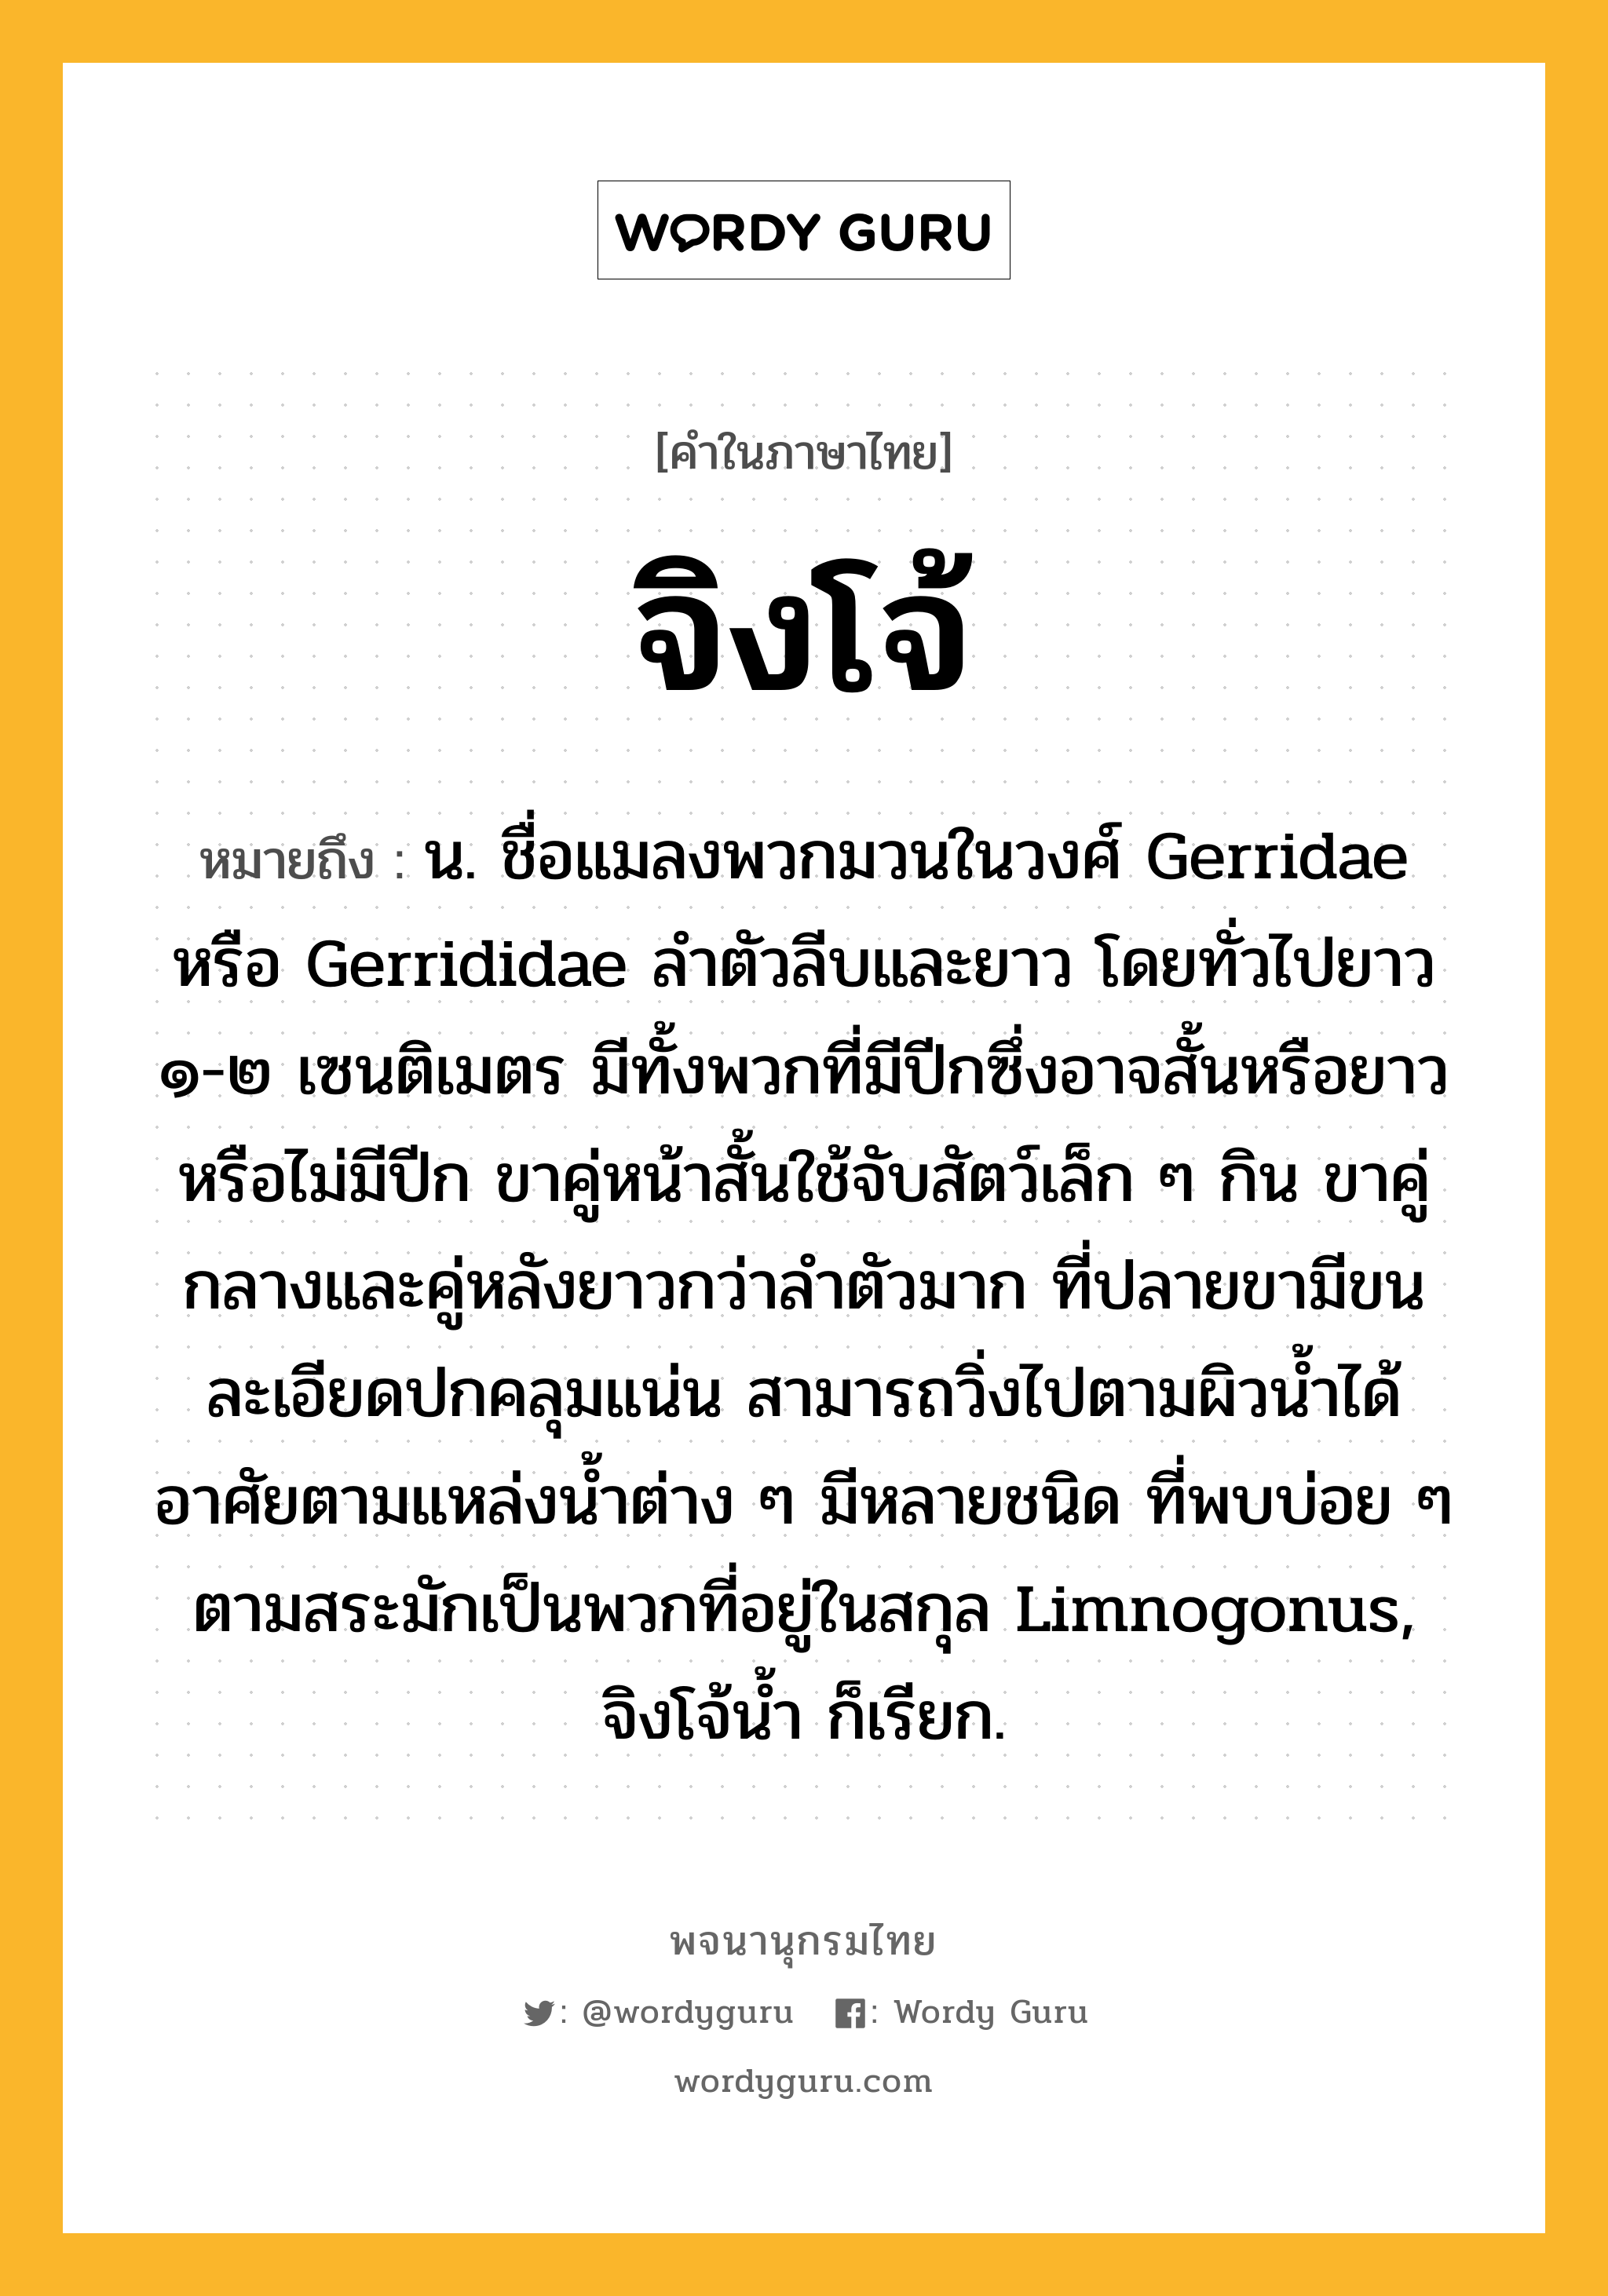 จิงโจ้ ความหมาย หมายถึงอะไร?, คำในภาษาไทย จิงโจ้ หมายถึง น. ชื่อแมลงพวกมวนในวงศ์ Gerridae หรือ Gerrididae ลําตัวลีบและยาว โดยทั่วไปยาว ๑-๒ เซนติเมตร มีทั้งพวกที่มีปีกซึ่งอาจสั้นหรือยาวหรือไม่มีปีก ขาคู่หน้าสั้นใช้จับสัตว์เล็ก ๆ กิน ขาคู่กลางและคู่หลังยาวกว่าลําตัวมาก ที่ปลายขามีขนละเอียดปกคลุมแน่น สามารถวิ่งไปตามผิวนํ้าได้ อาศัยตามแหล่งนํ้าต่าง ๆ มีหลายชนิด ที่พบบ่อย ๆ ตามสระมักเป็นพวกที่อยู่ในสกุล Limnogonus, จิงโจ้นํ้า ก็เรียก.